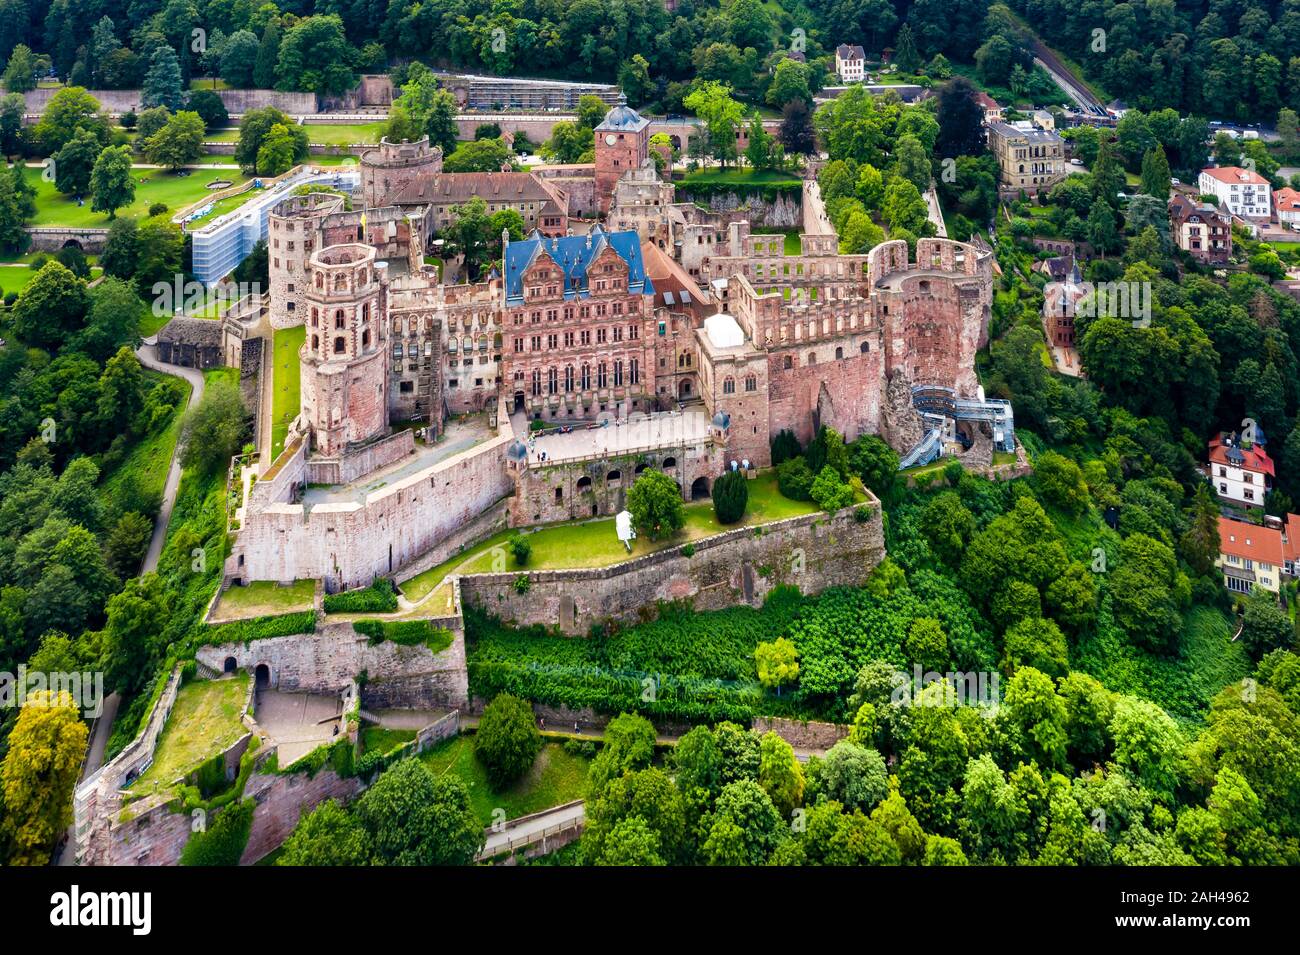 Germany, Baden-Wurttemberg, Heidelberg, Aerial view of Heidelberg Castle in summer Stock Photo